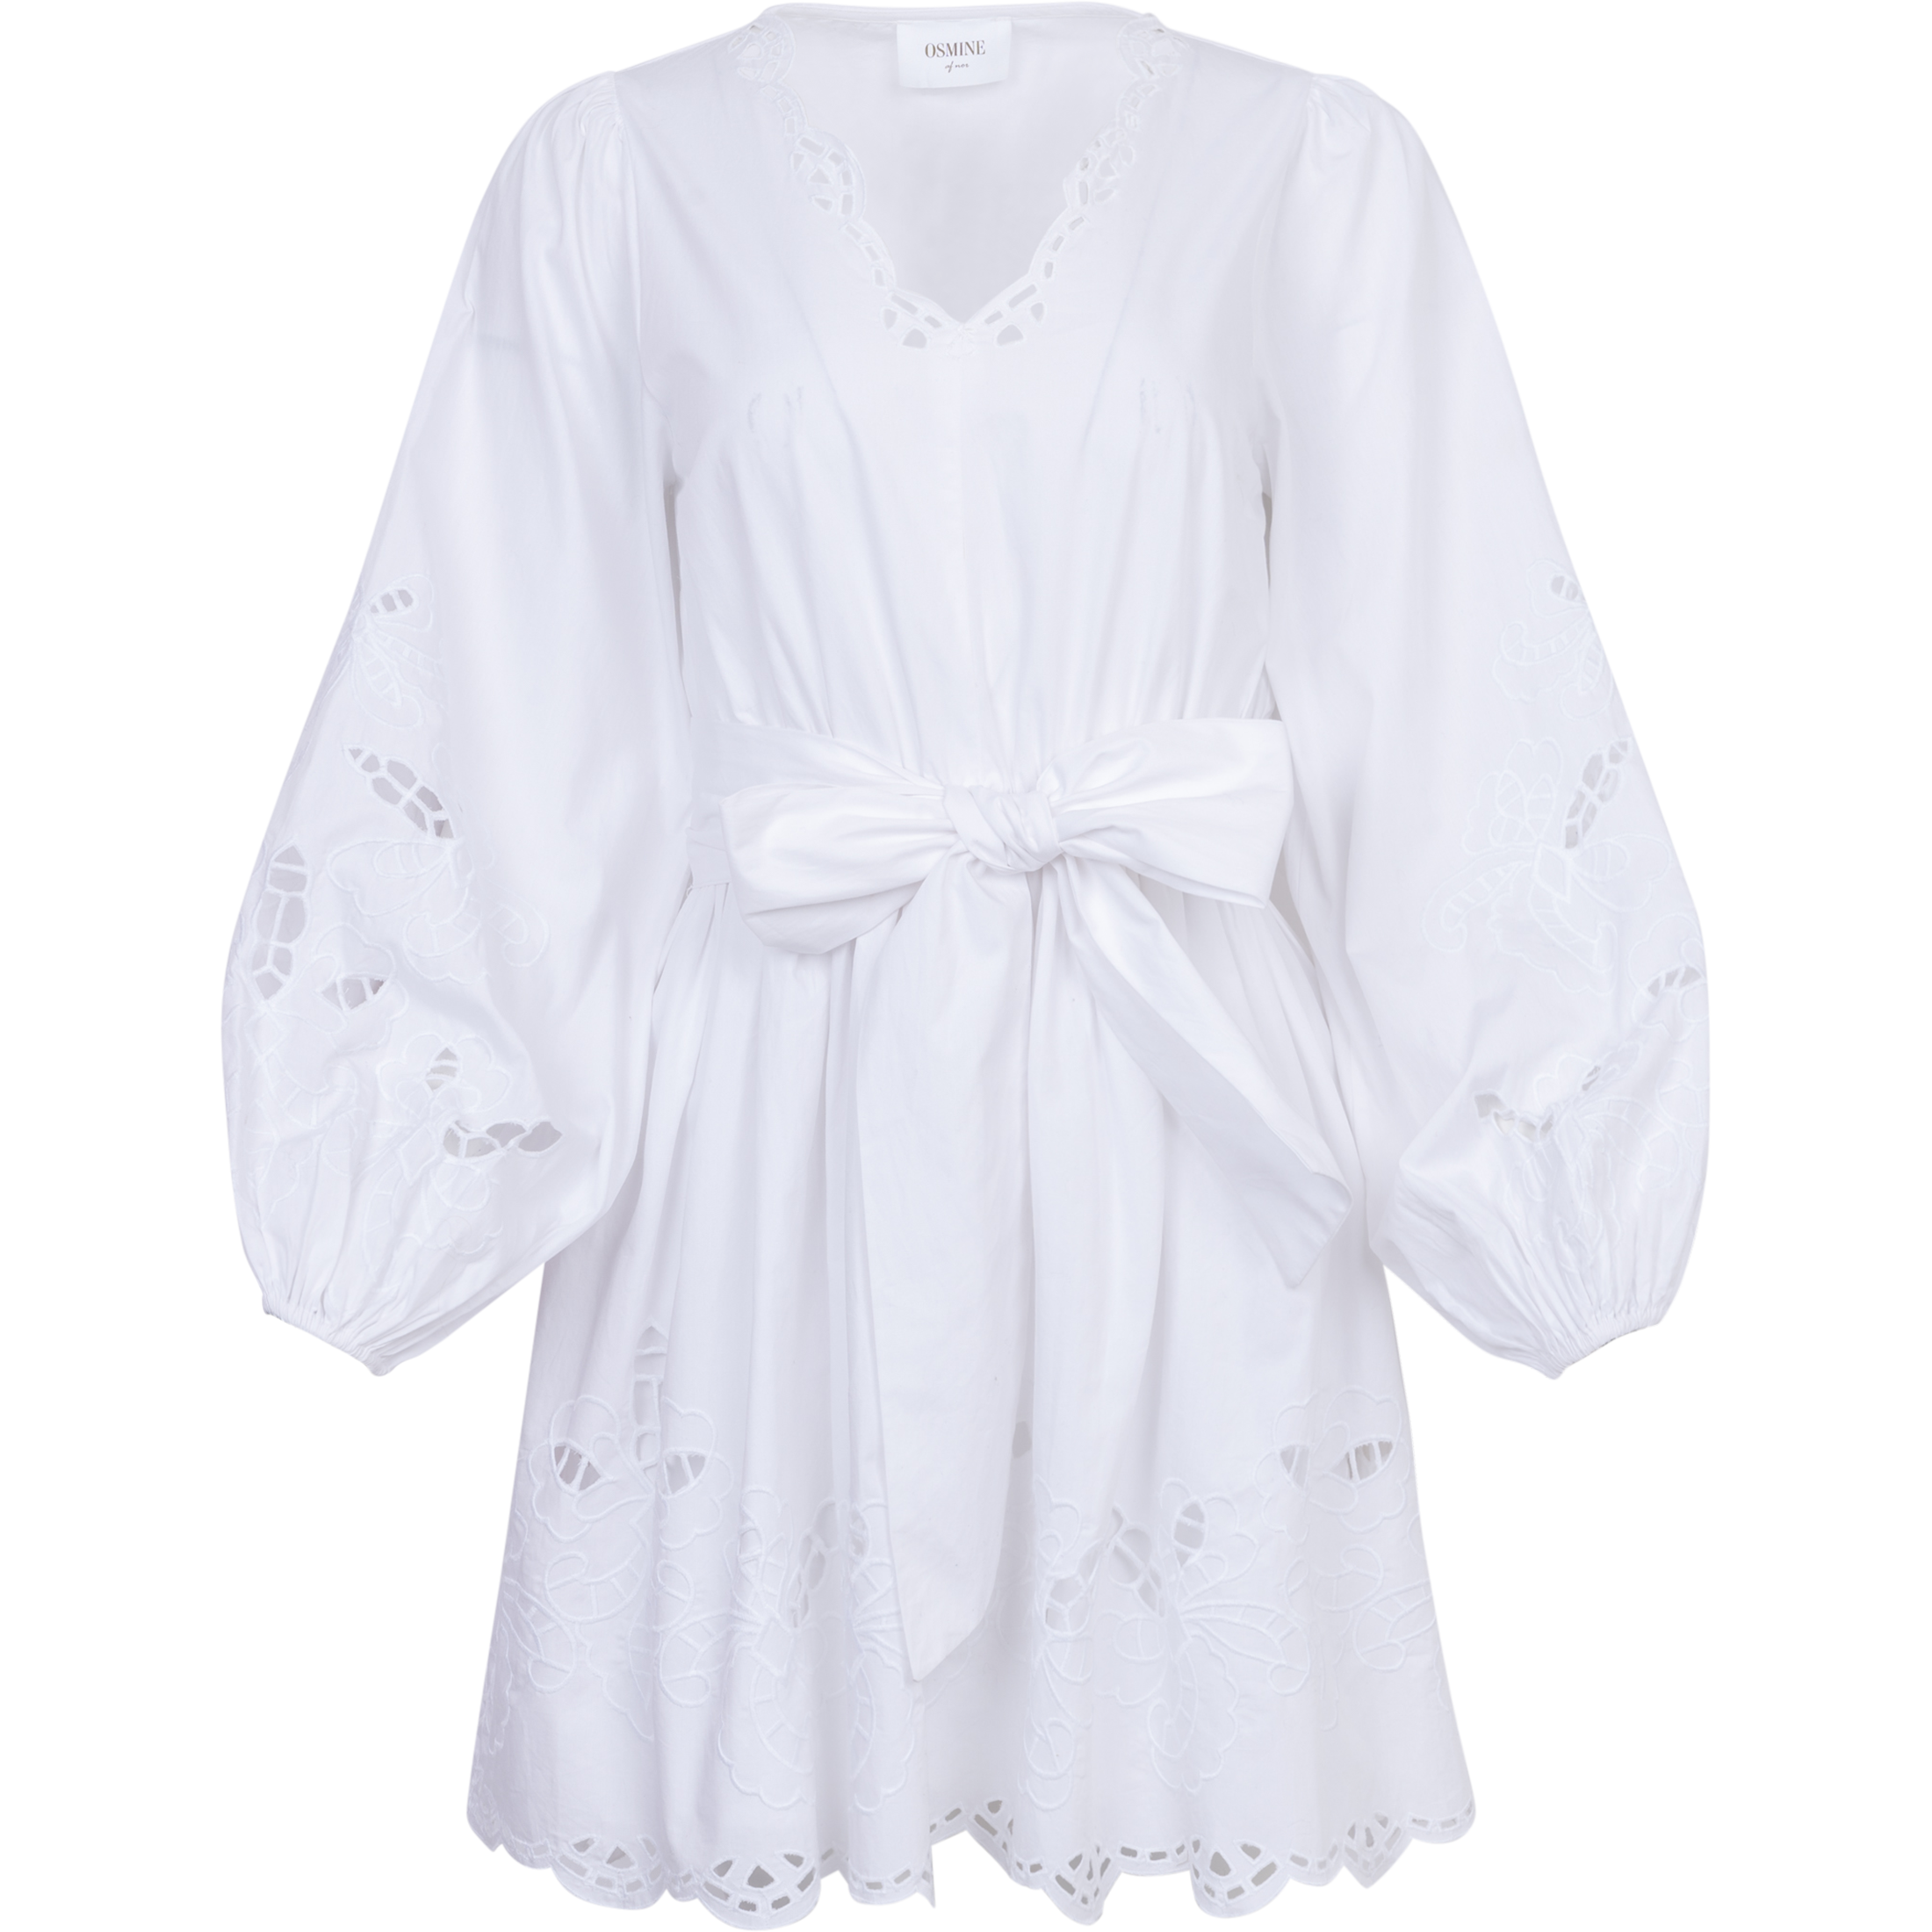 Frida Eyelet Poplin Dress - White